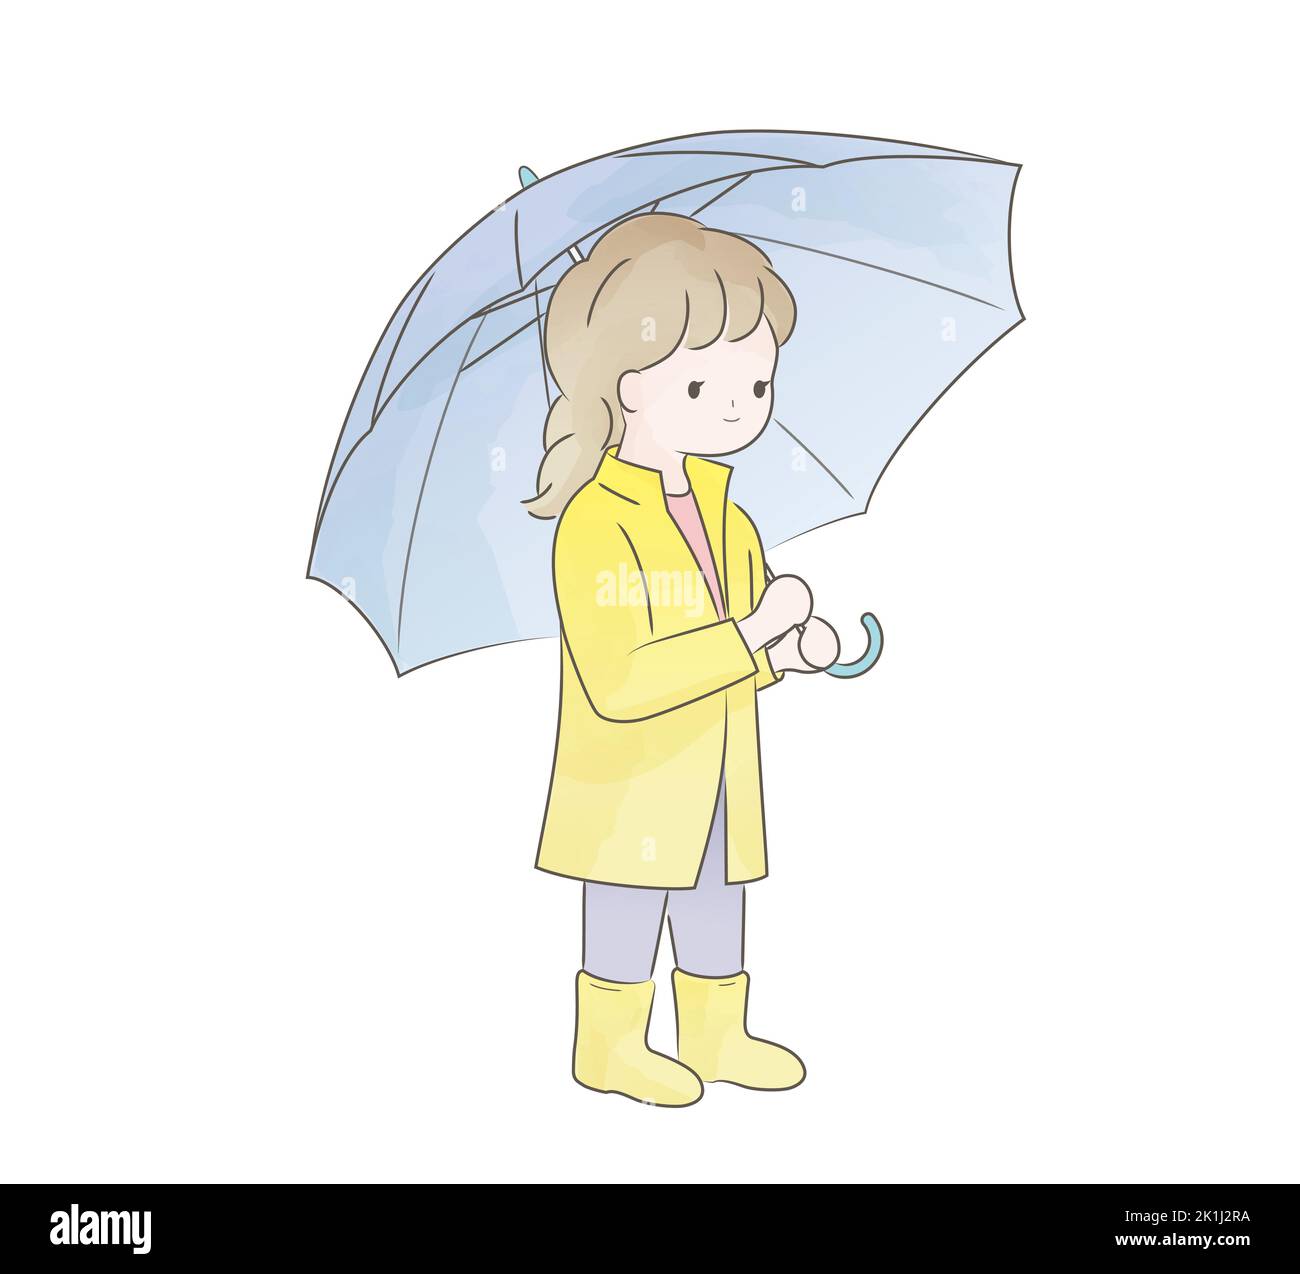 Aquarelle Cute Girl dans Un imperméable tenant un parapluie. Illustration vectorielle isolée sur un fond blanc. Illustration de Vecteur